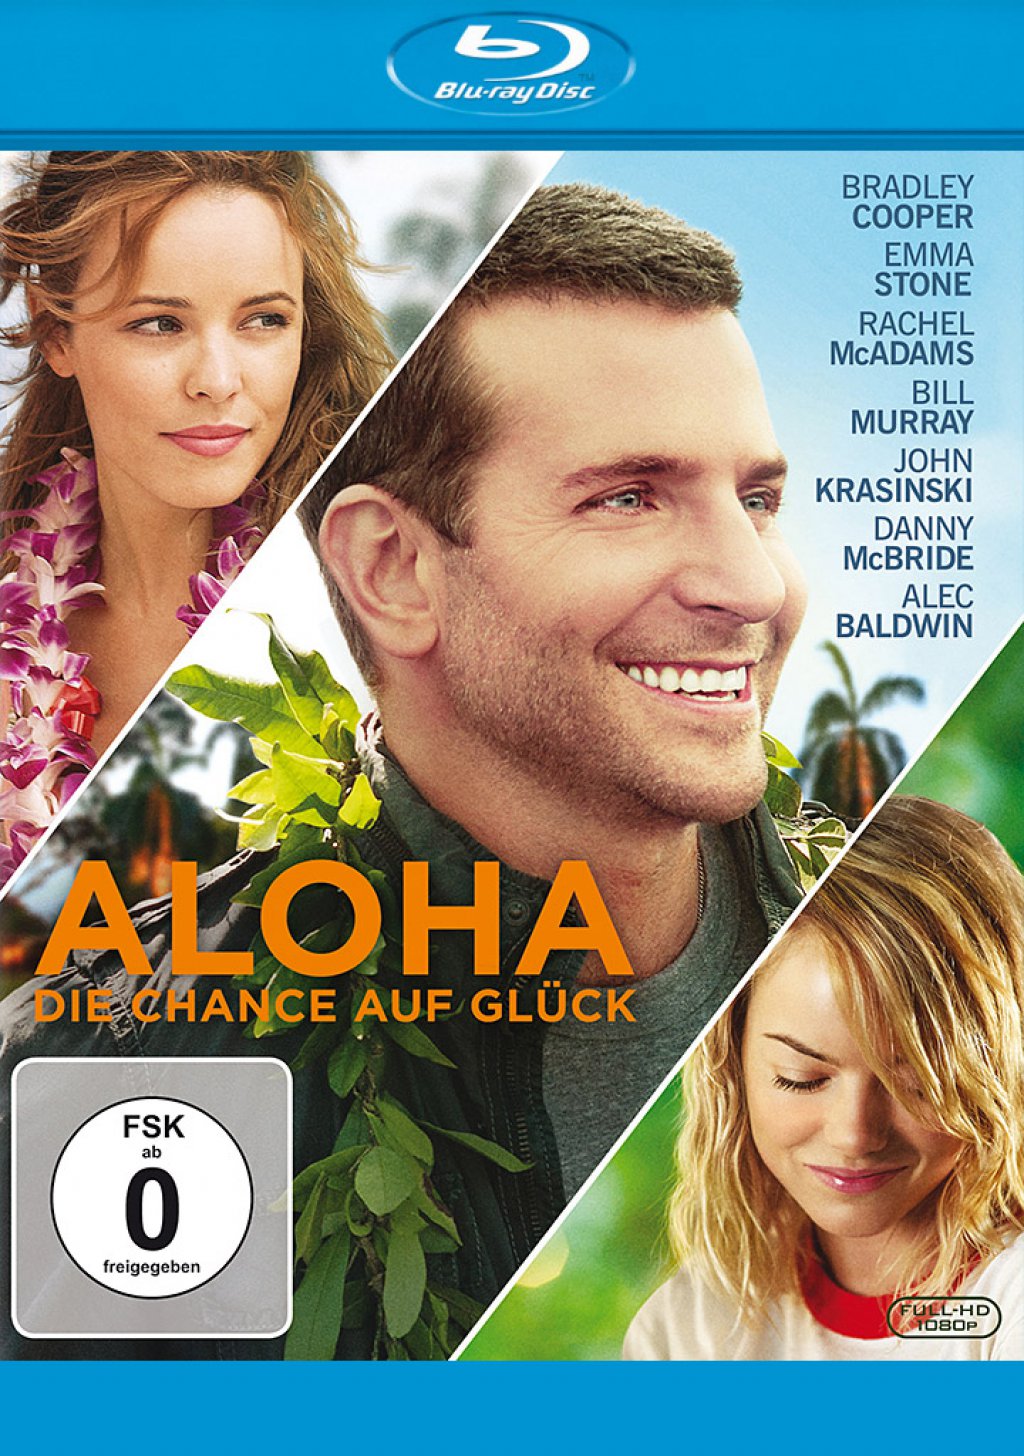 Aloha die chance auf glück imdb